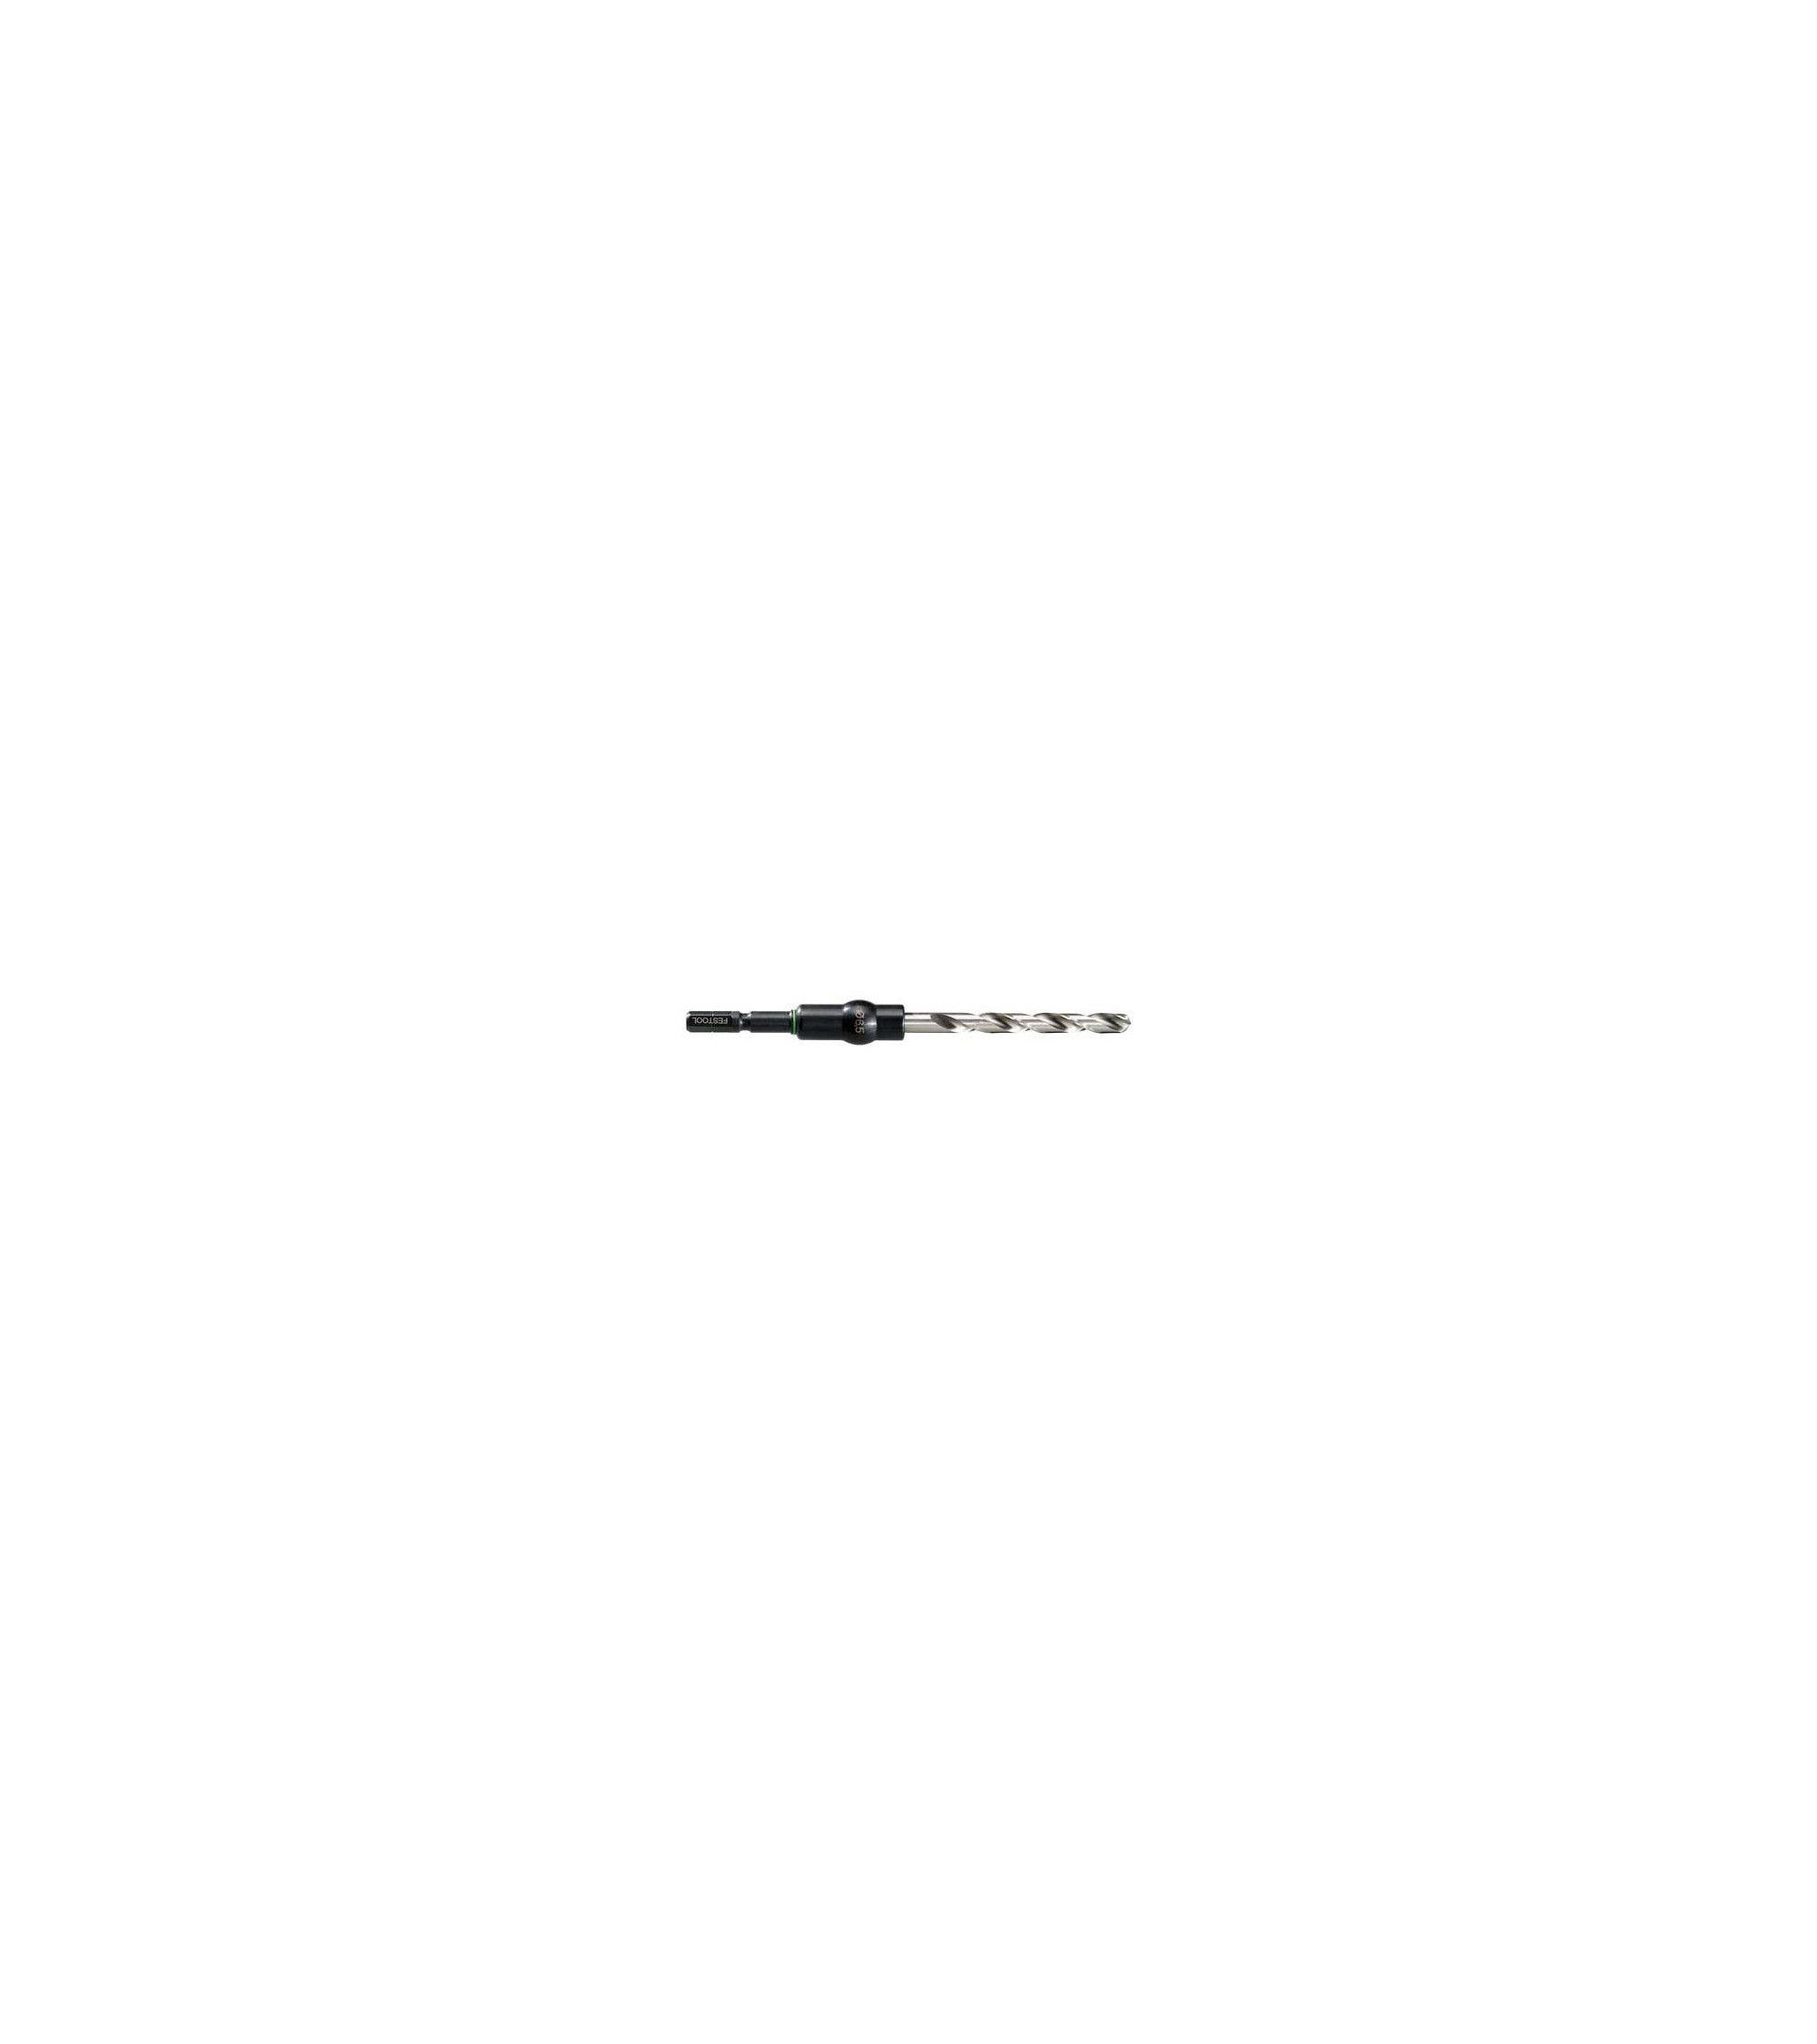 Festool Twist drill bit HSS D 5/52 CE/M-Set, KAINA BE PVM: 14.805, KODAS: 493425 | 001